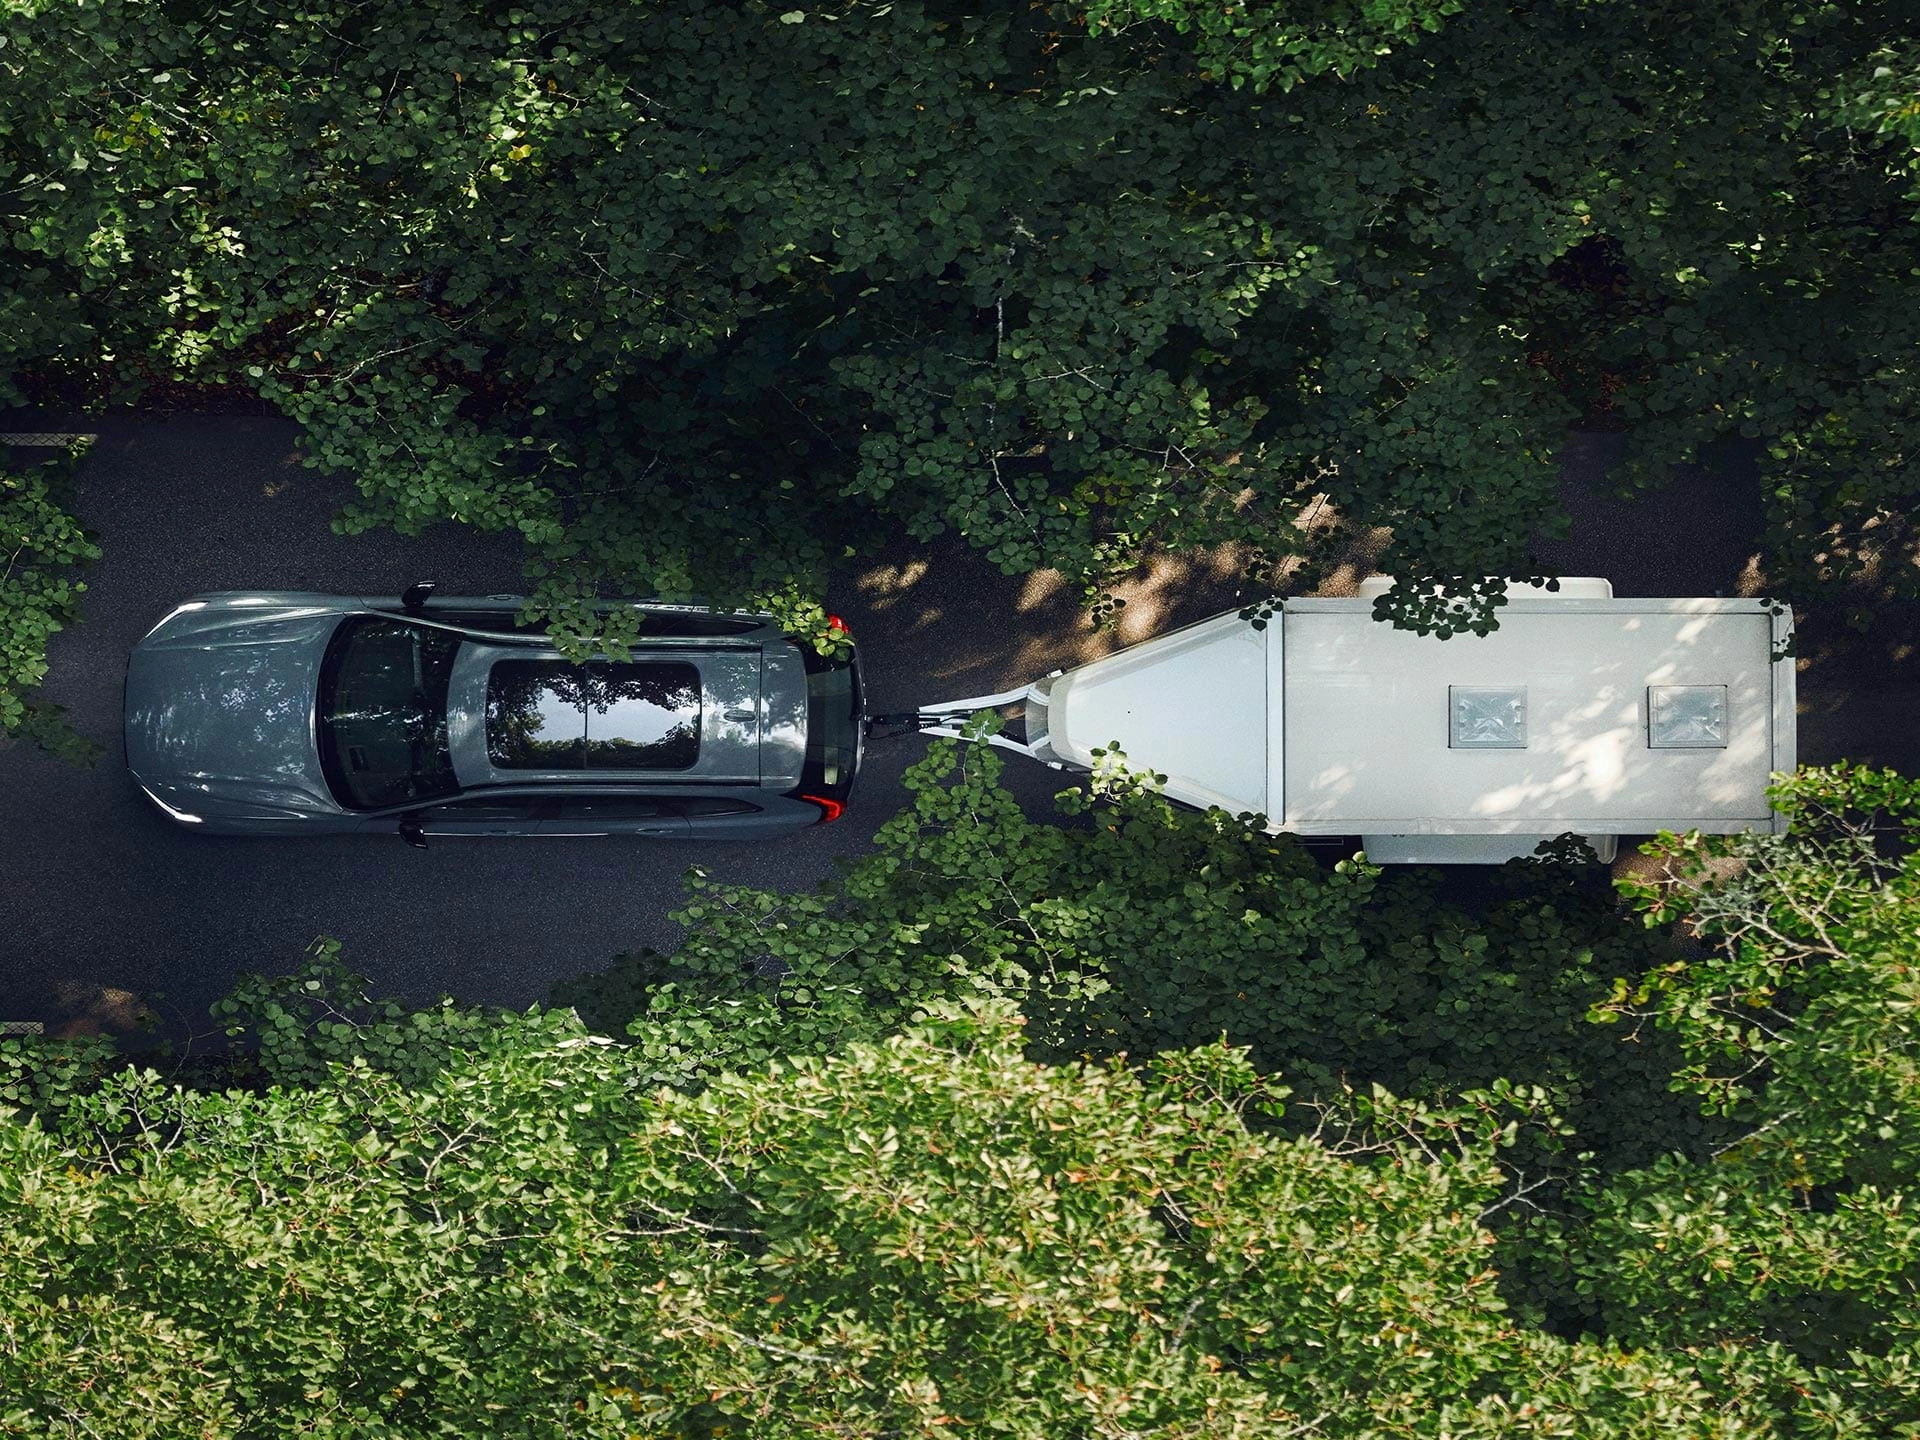 Perspectiva superior de um SUV Volvo a rebocar um atrelado branco numa estrada com folhas num dia de sol.